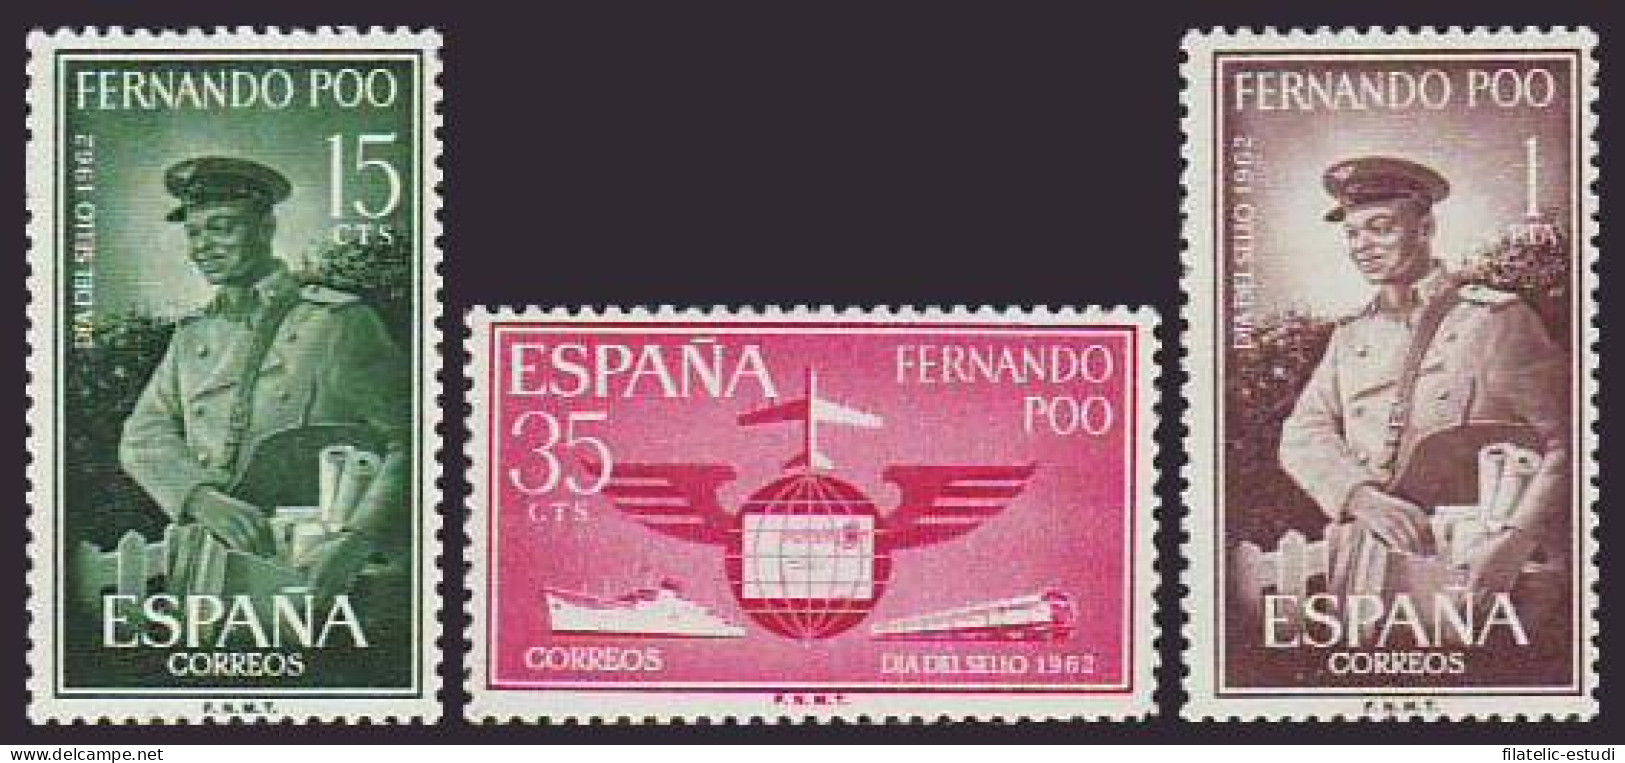 Fernando Poo 210/12 1962 Día Del Sello Correo-Alegoría Del Correo MNH - Fernando Poo